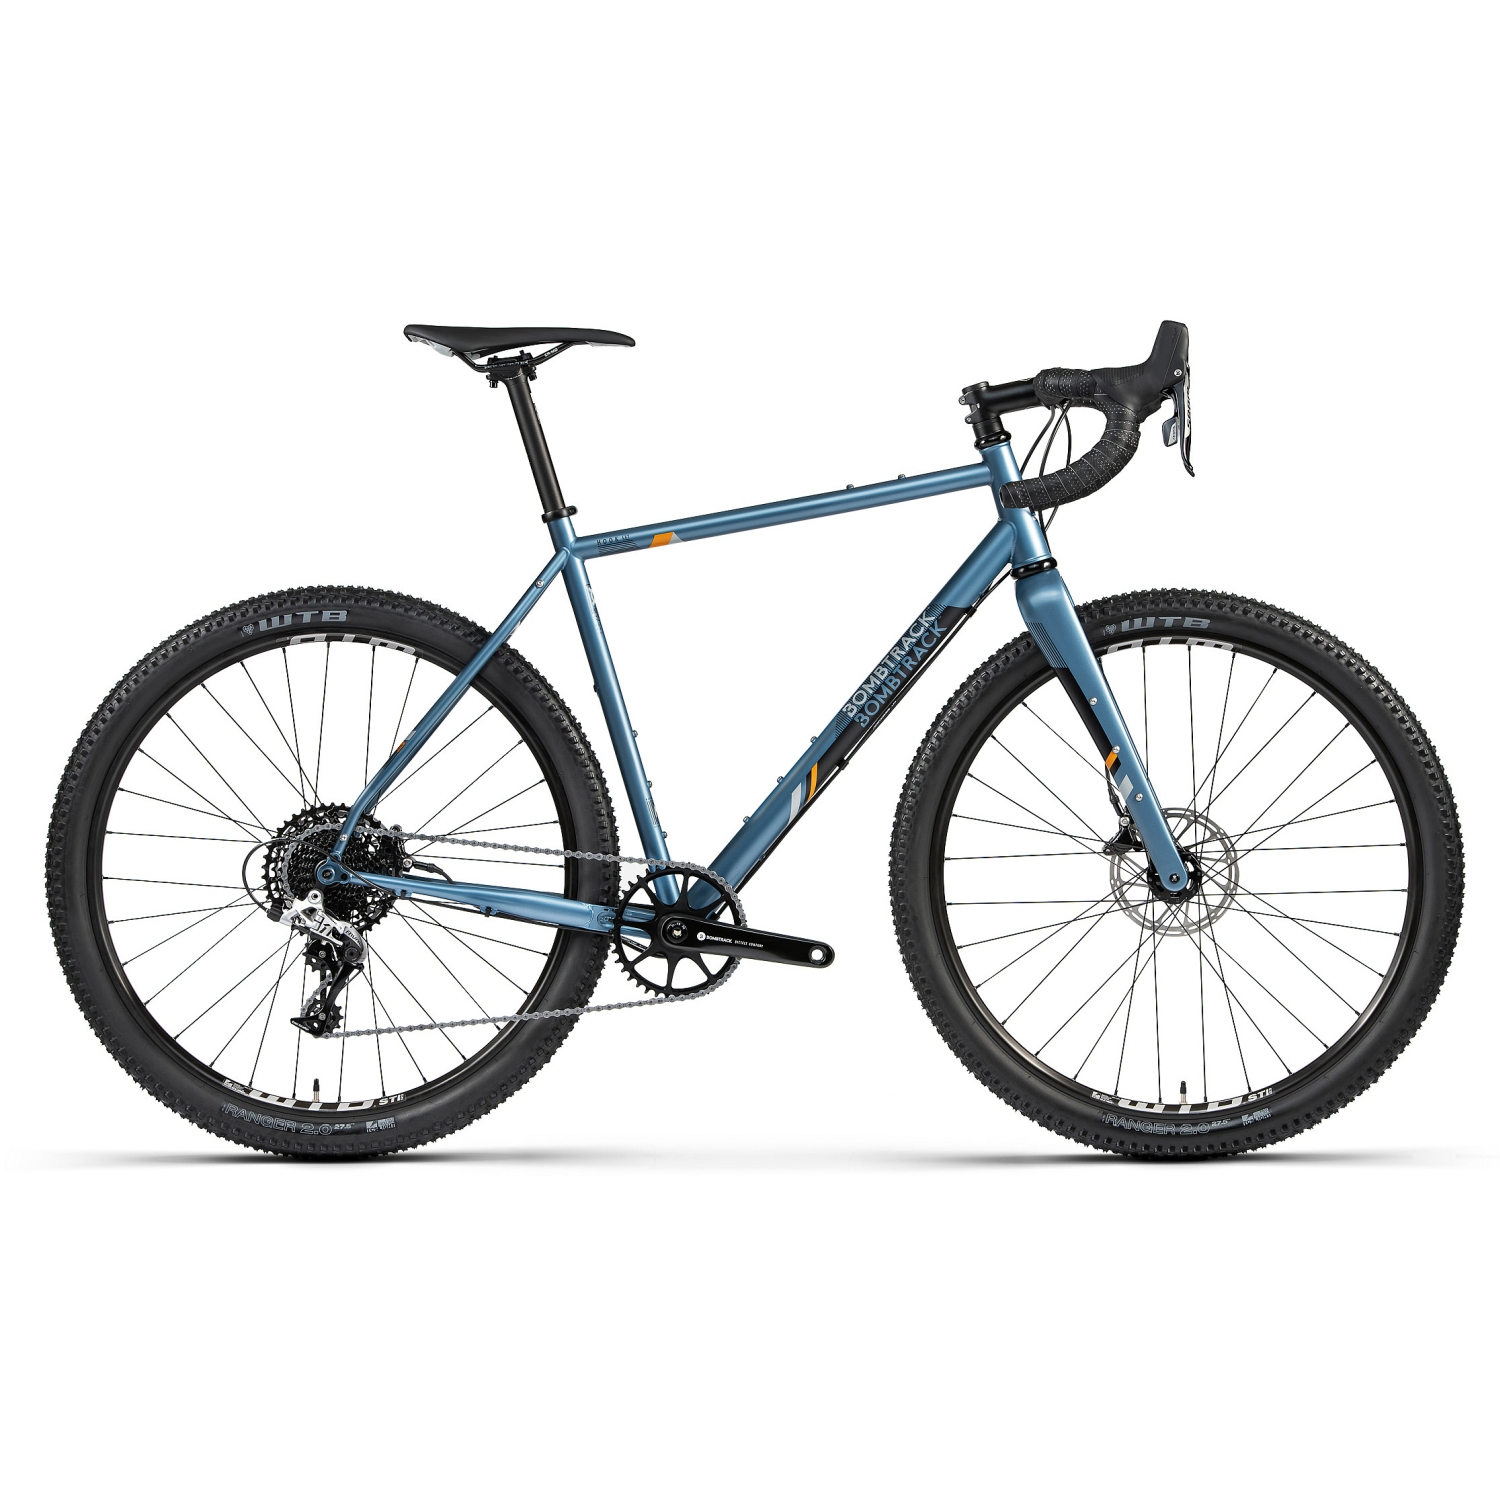 Productfoto van Bombtrack Hook Ext - 650B Cross/Gravel/Roadbike - 2022 - matt metallic grey blue